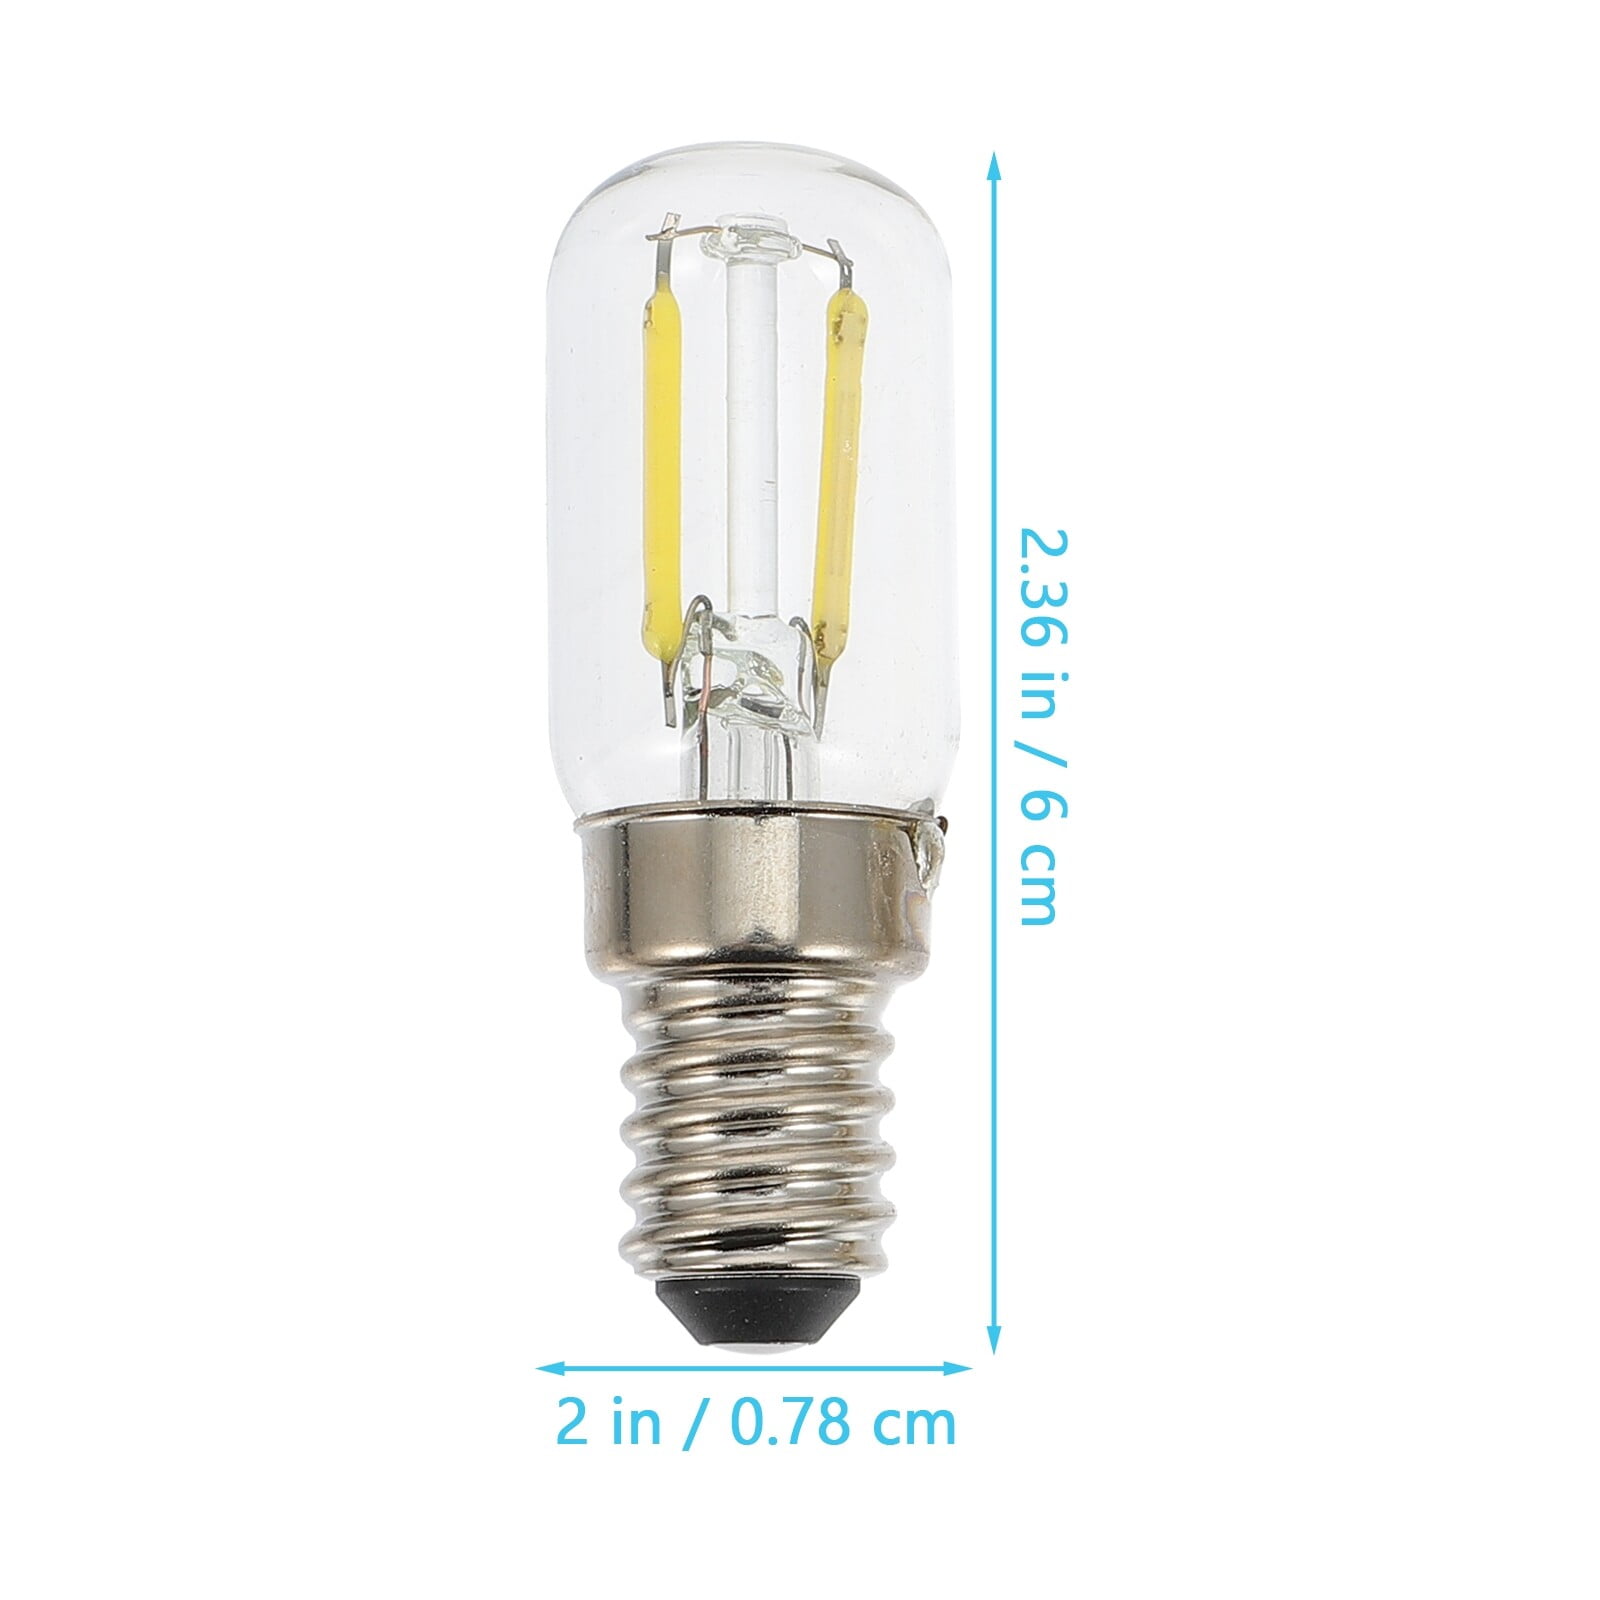 Led Refrigerator Fridge Light Bulb Lamp E14  E14 Refrigerator Bulb Led  Mini - Led Bulbs & Tubes - Aliexpress